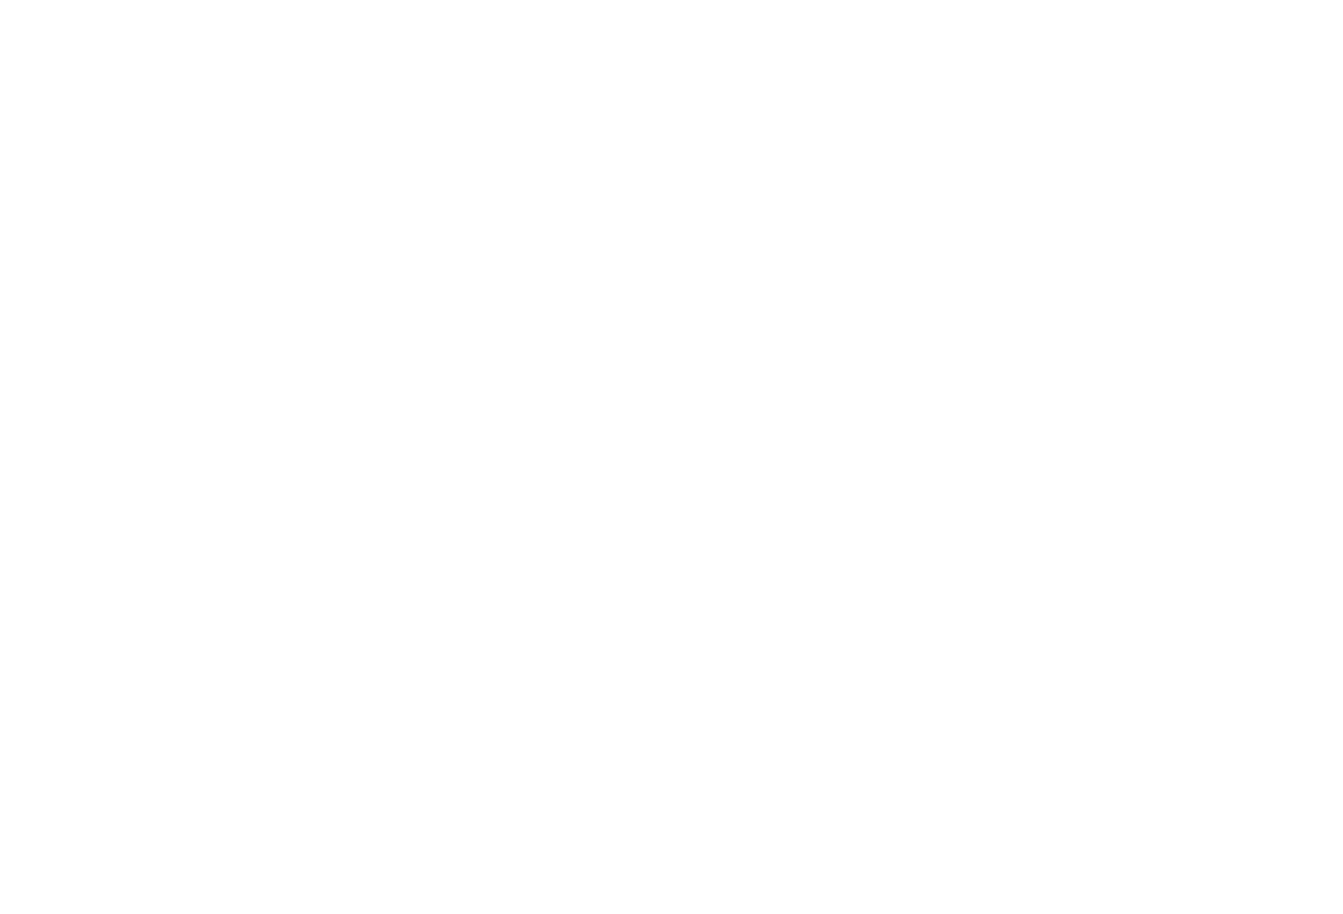 Zed Run